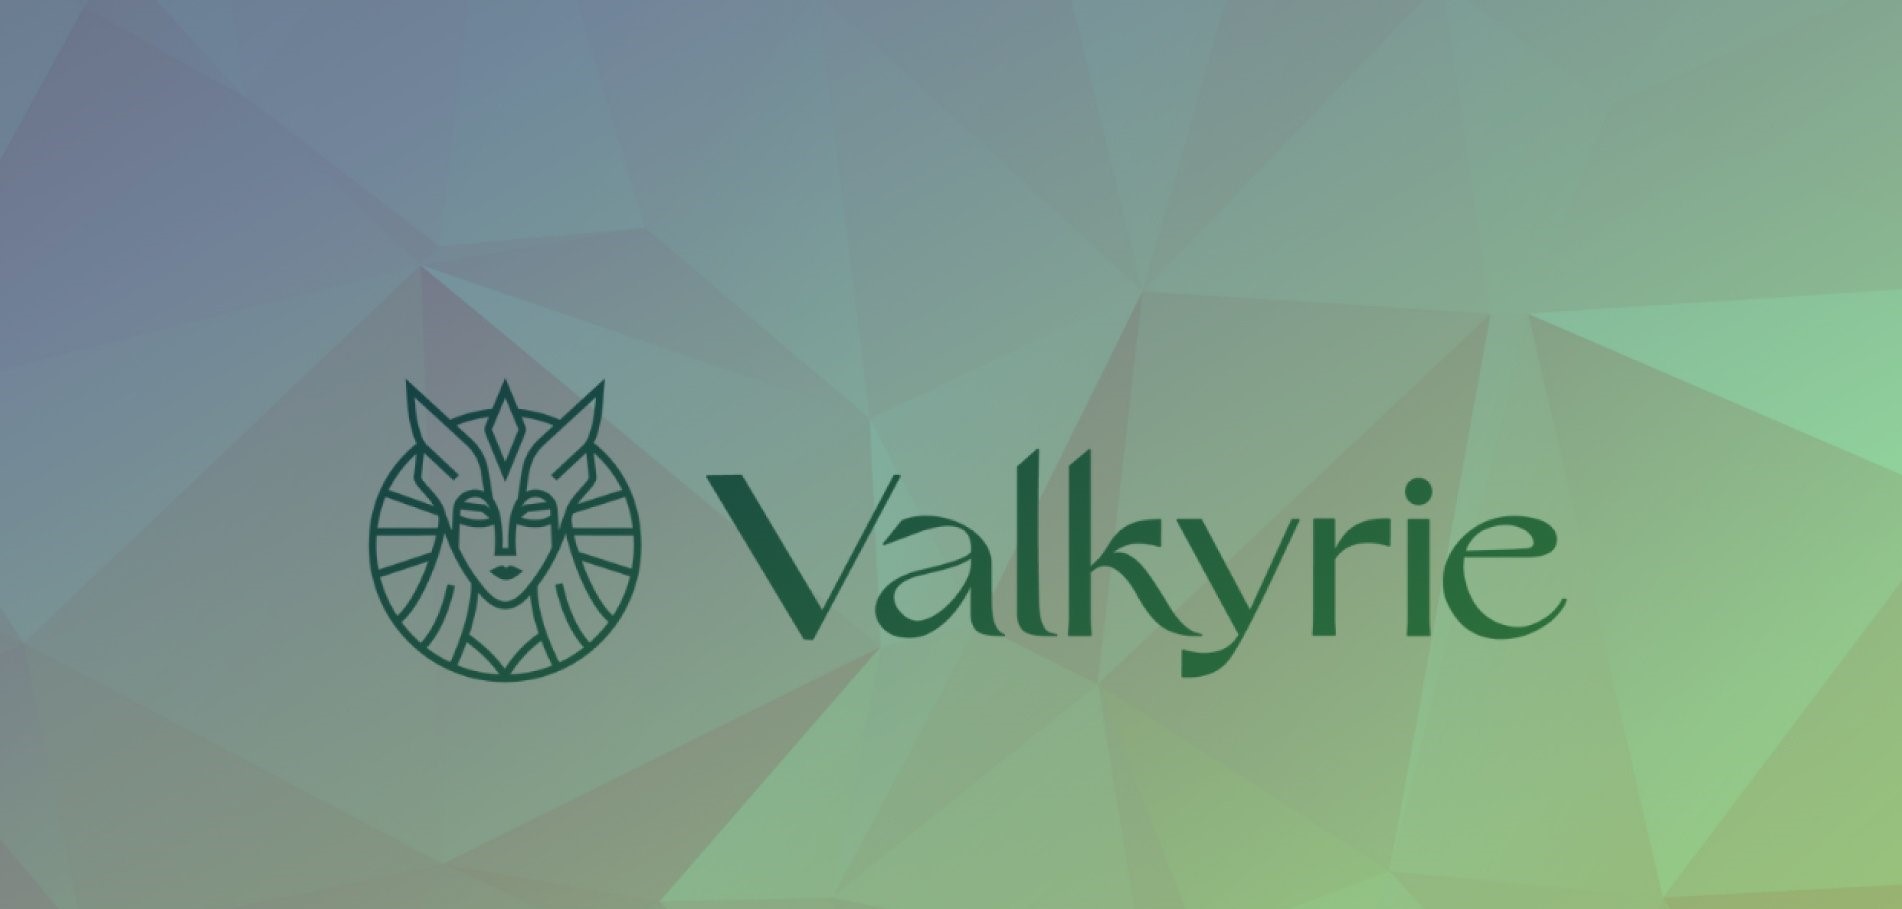 فایل های Valkyrie برای ETF آتی اتر با SEC